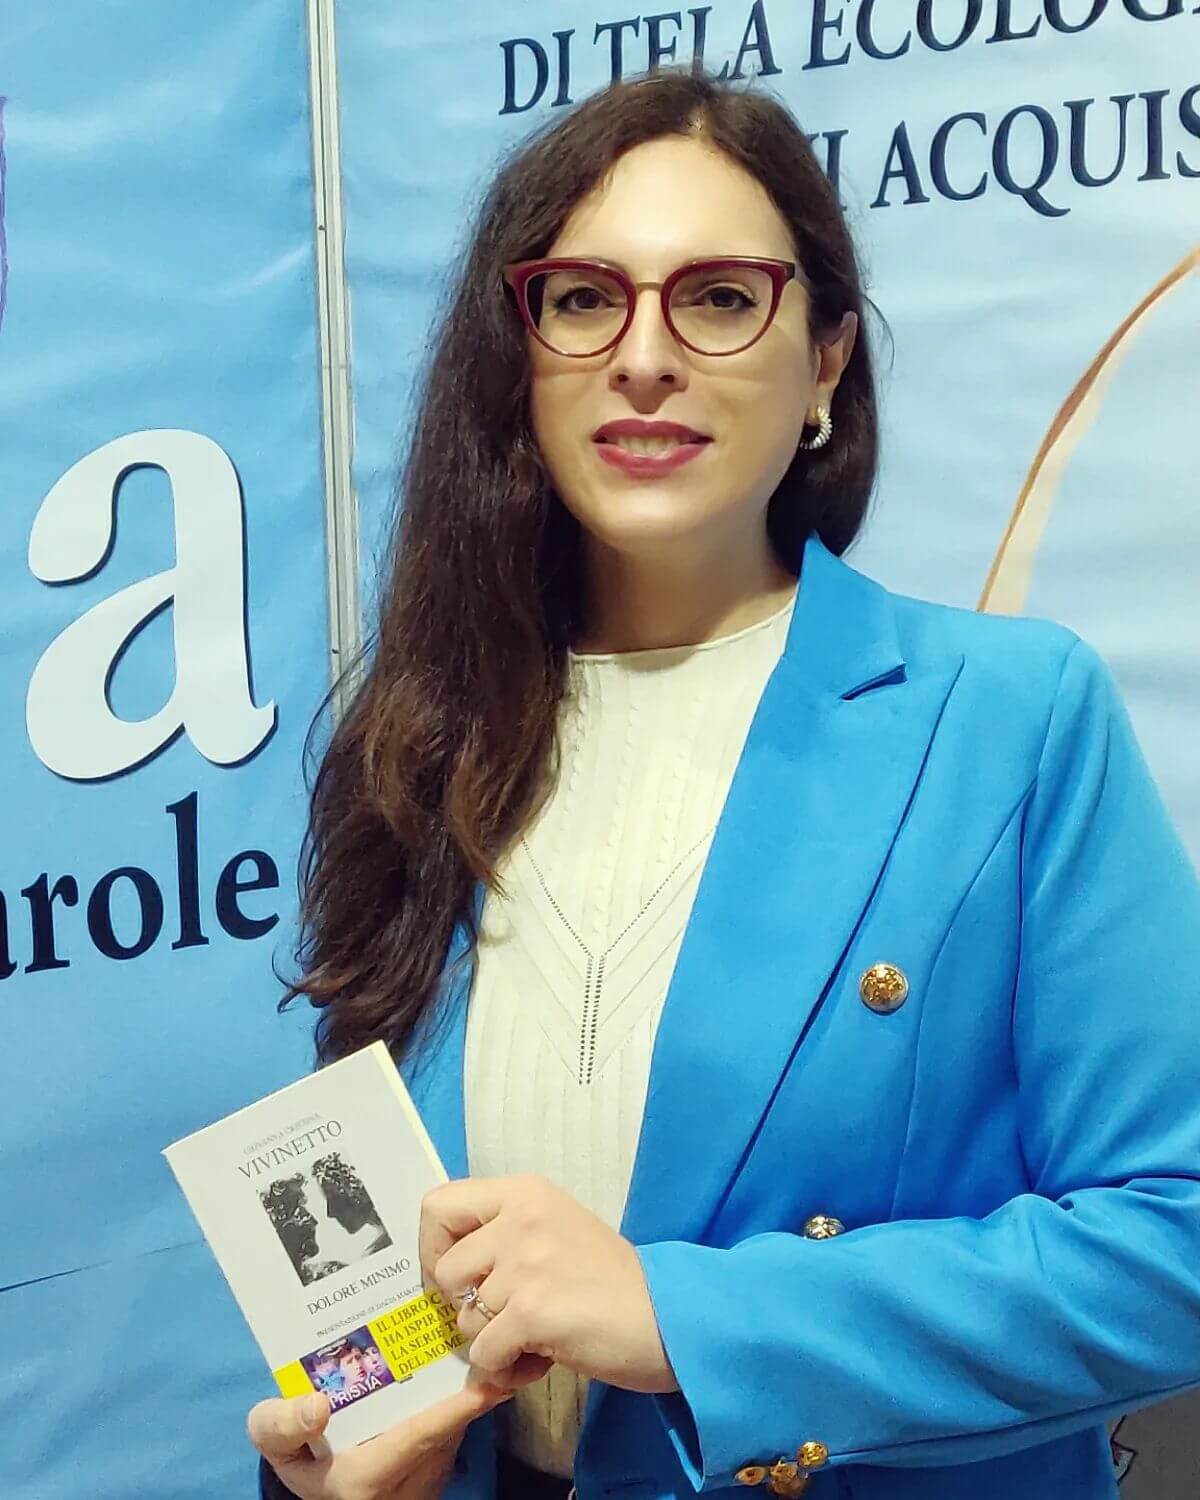 Intervista a Giovanna Cristina Vivinetto, licenziata da una scuola perché donna trans* ha vinto in tribunale - Giovanna Cristina Vivinetto 2 - Gay.it